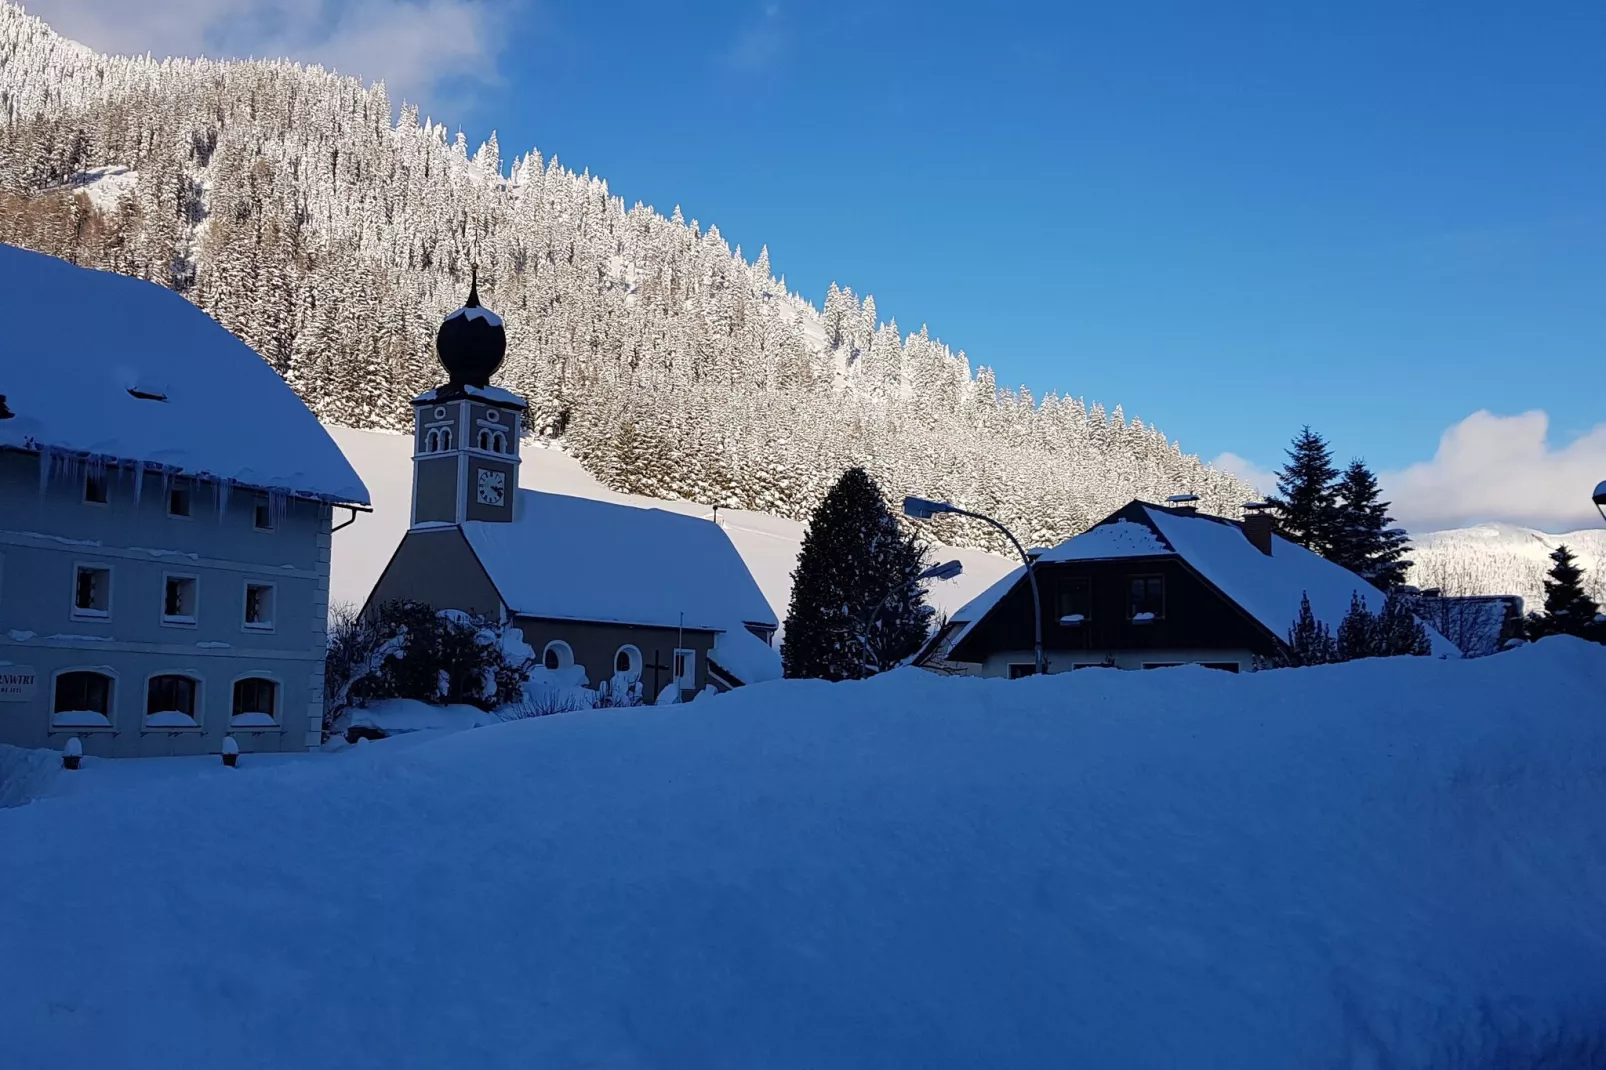 Chalet Moarhof-Gebied winter 5km